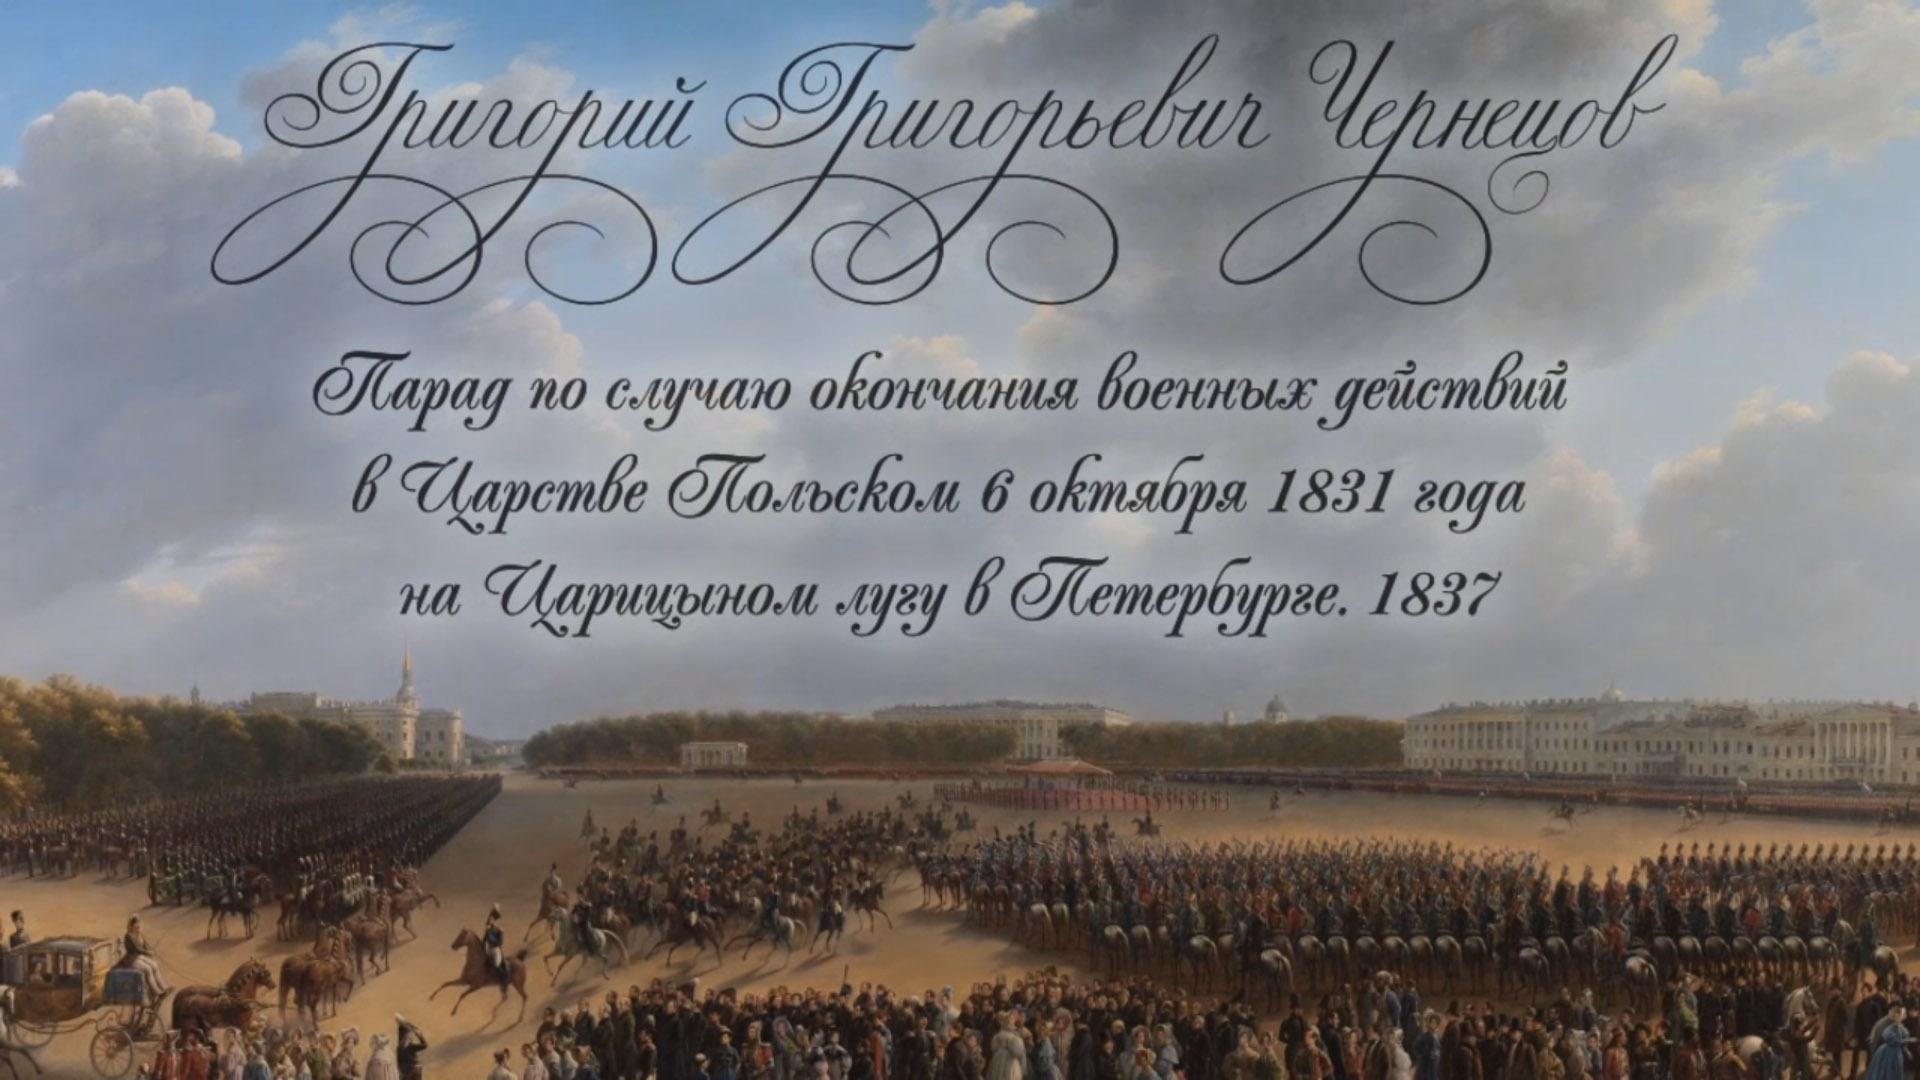 Парад по случаю окончания военных действий в Царстве Польском 6-го октября 1831 года на Царицыном лугу в Петербурге